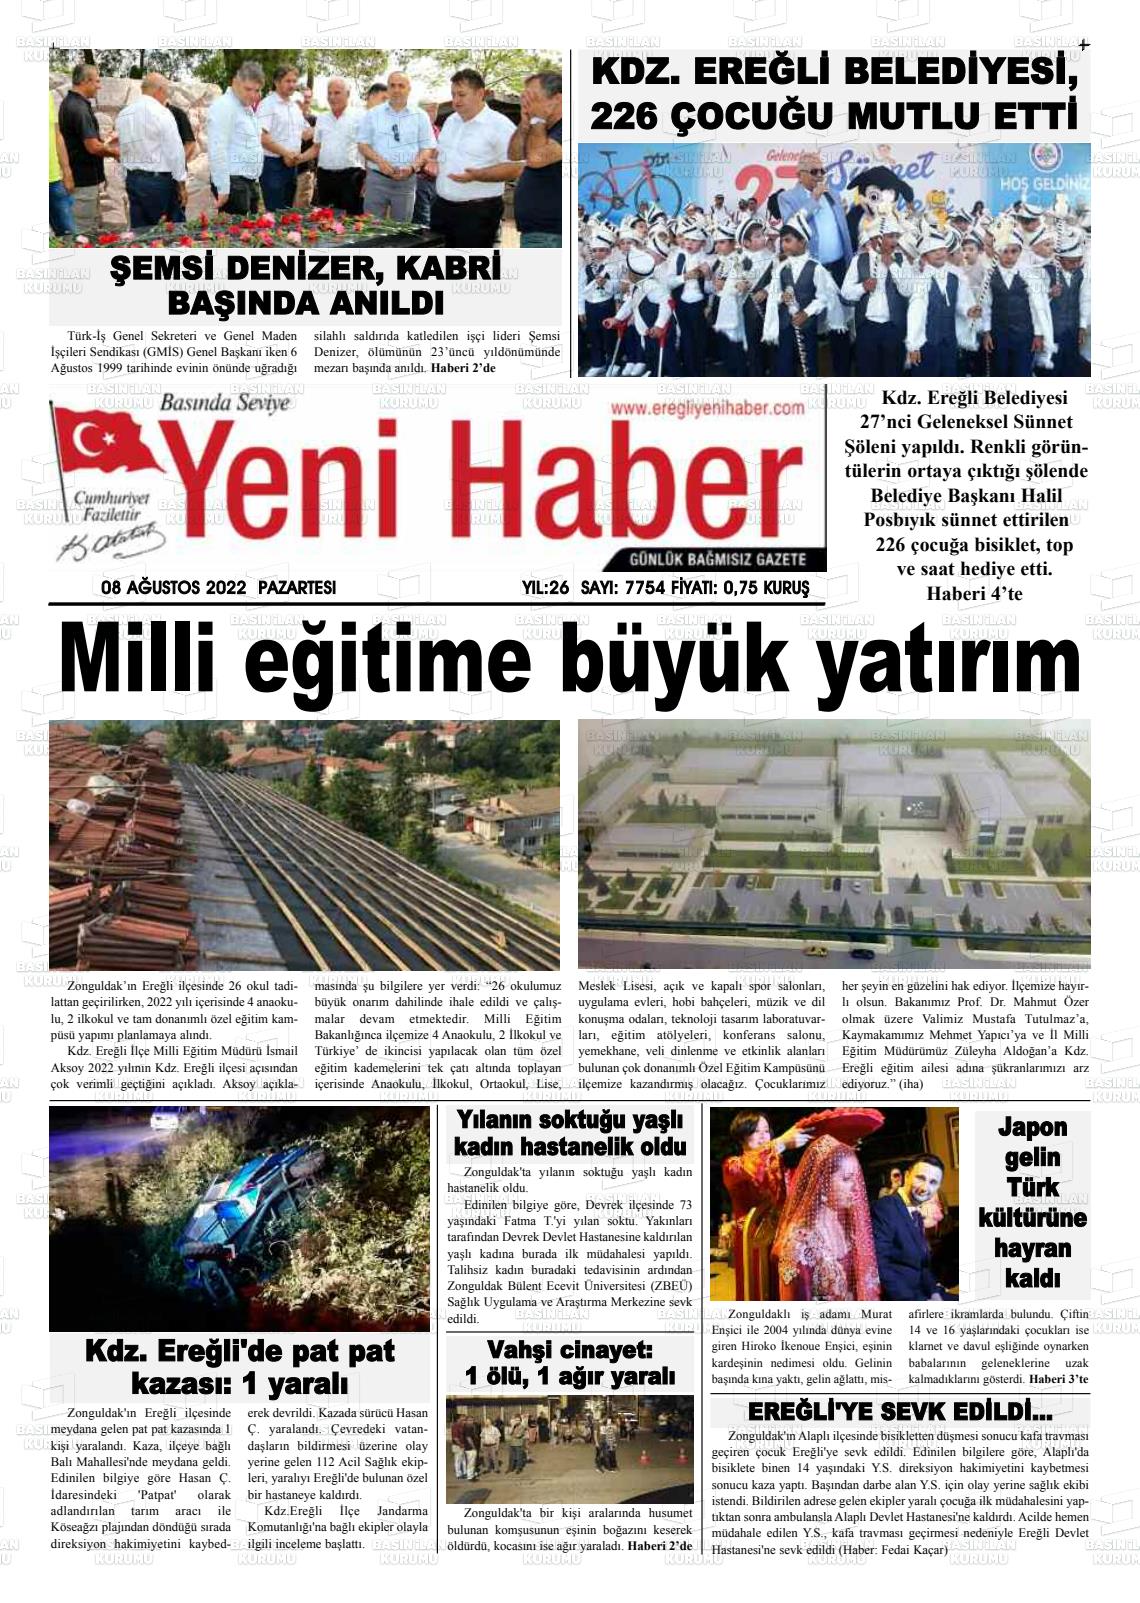 08 Ağustos 2022 Ereğli Yeni Haber Gazete Manşeti